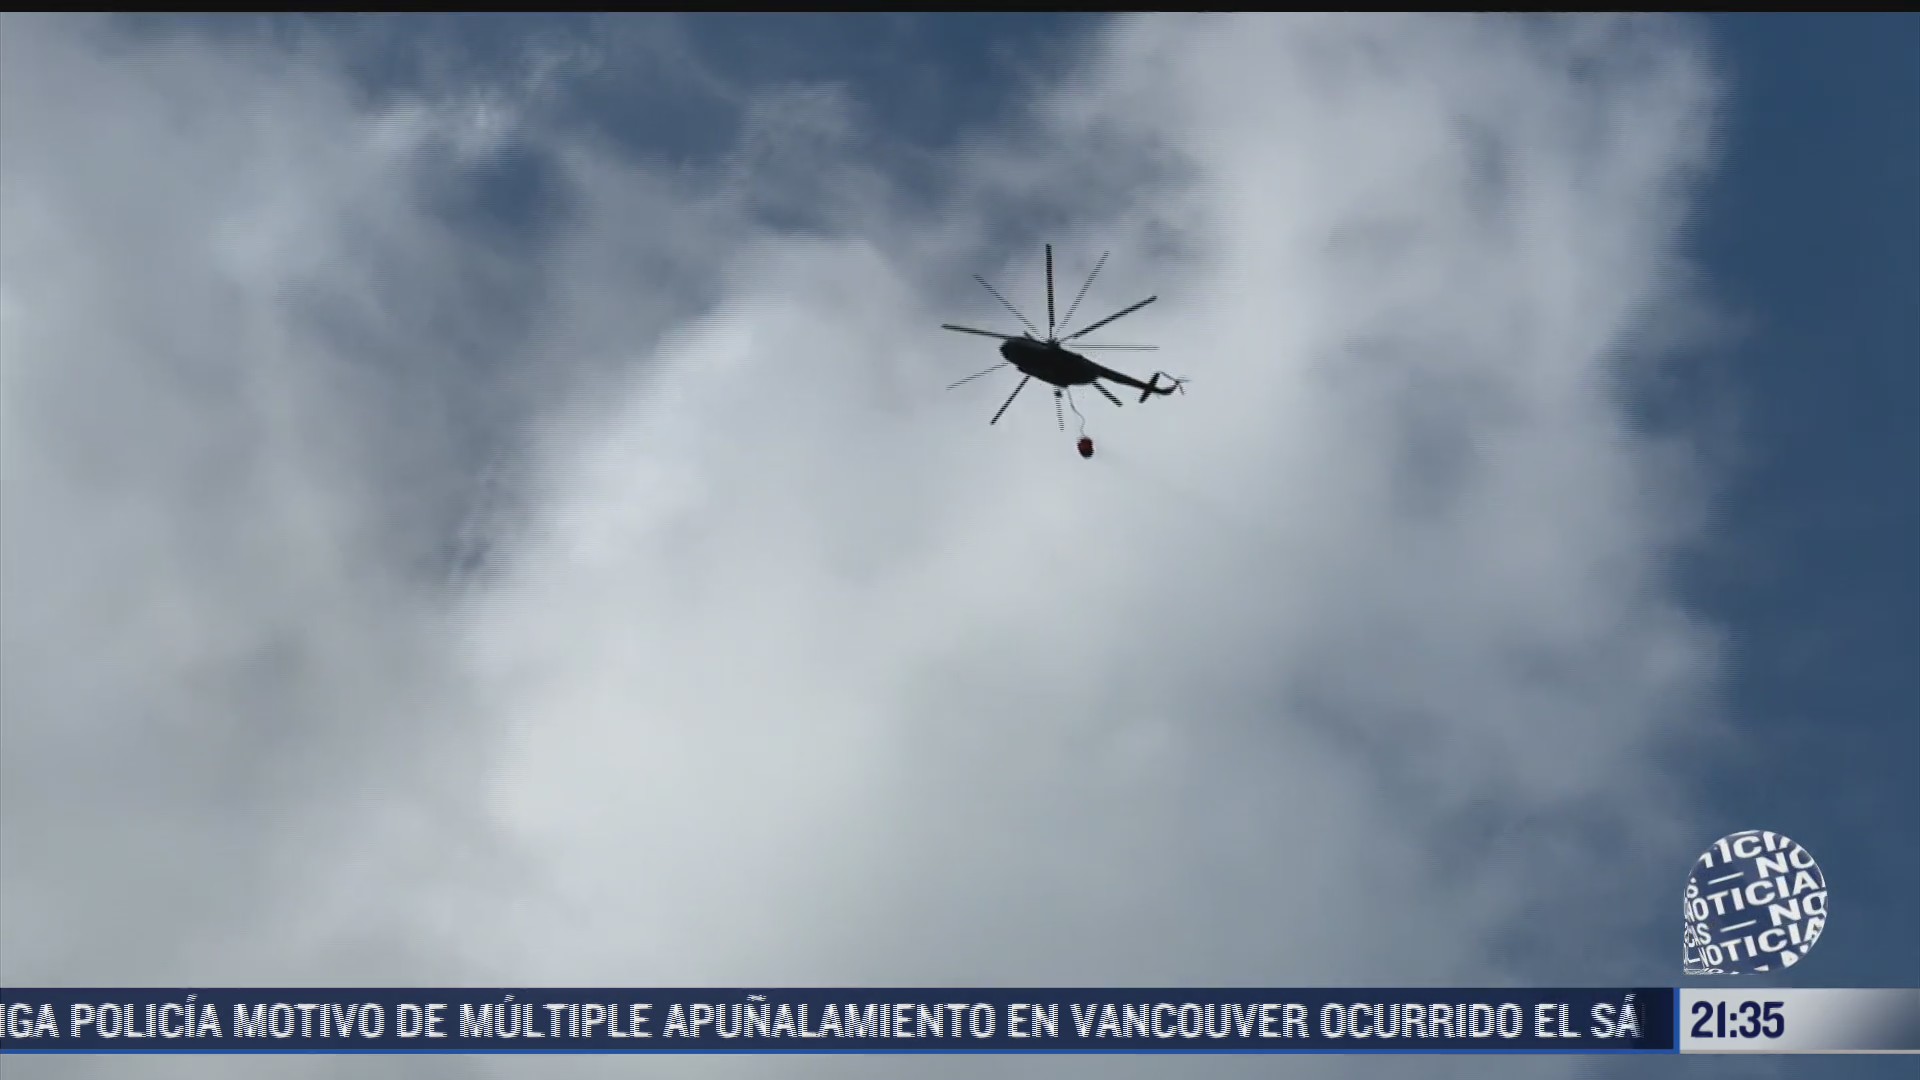 helicopteros trabajan para sofocar incendio en arteaga coahuila